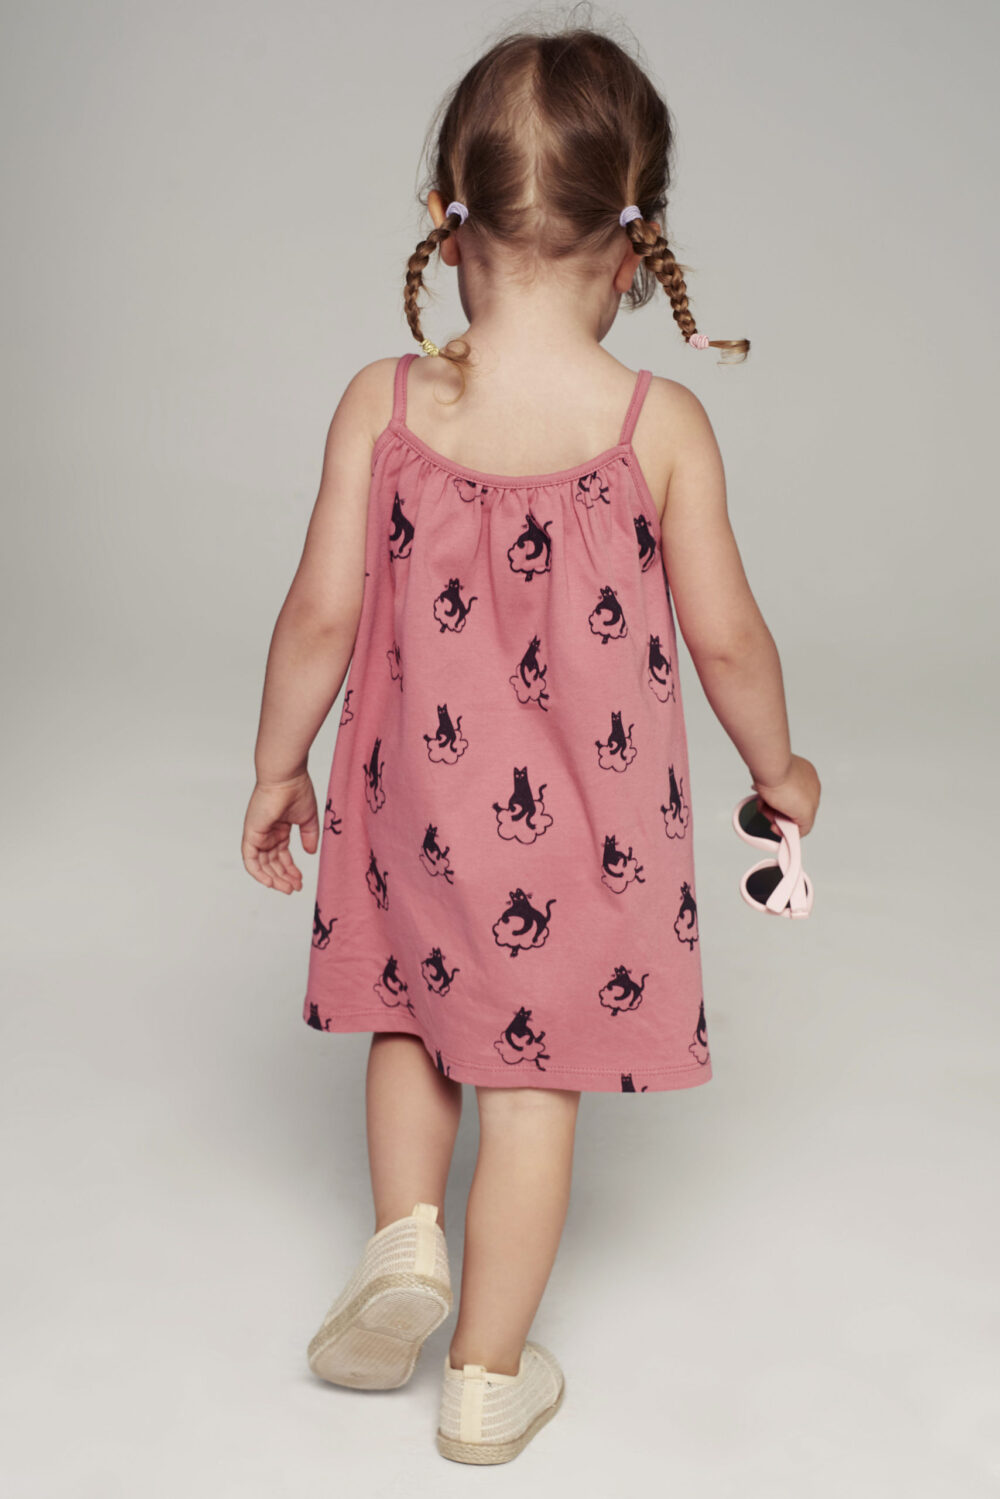 Sukienka dla dziecka na ramiaczkach rozowa Koty tyl scaled 1